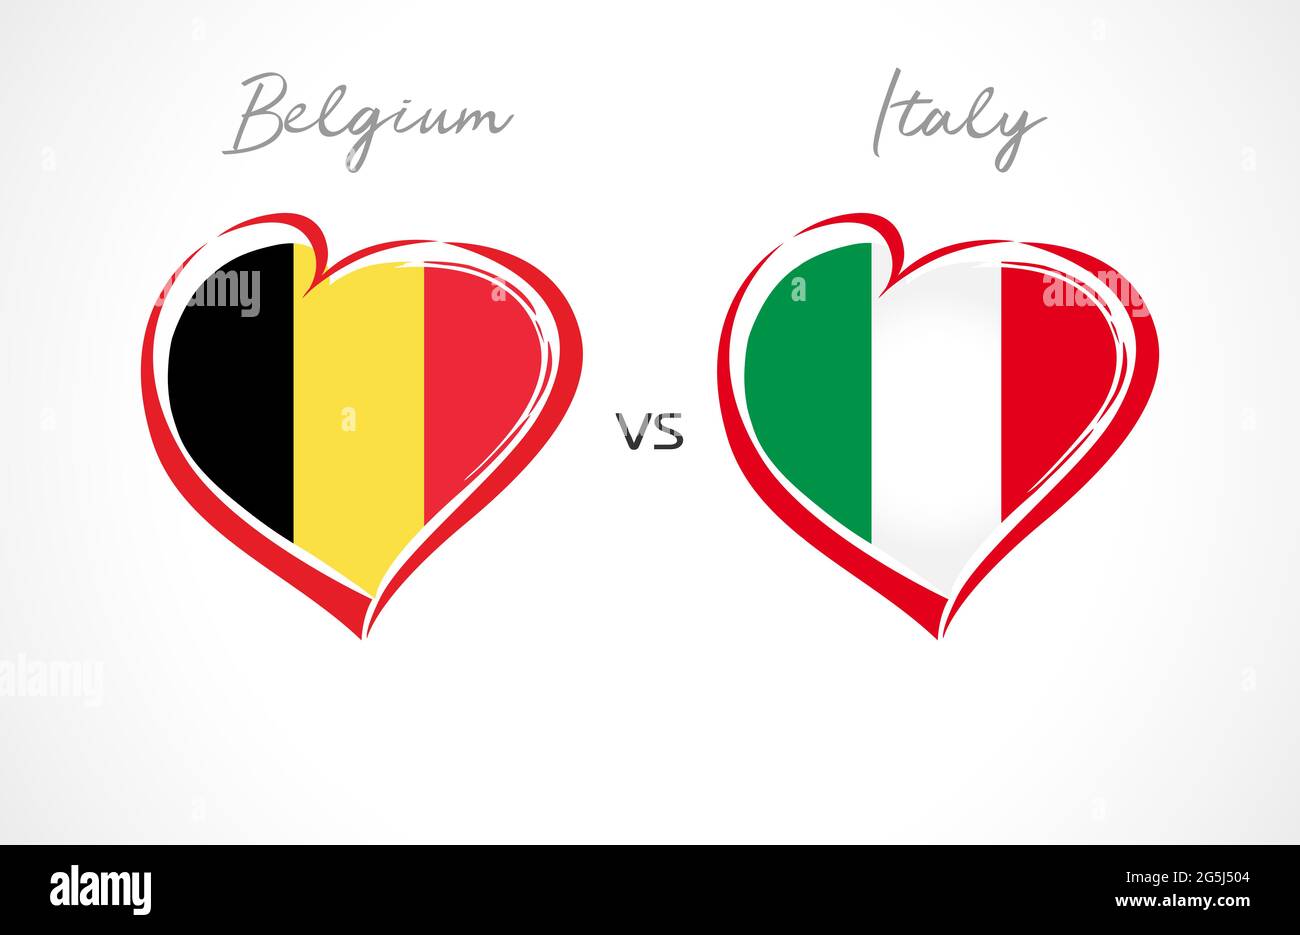 Flaggen-Emblem Belgien gegen Italien. Fußball der Nationalmannschaft auf weißem Hintergrund. Belgische und italienische Nationalflagge im Herzen, Vektorgrafik. Europacup Stock Vektor